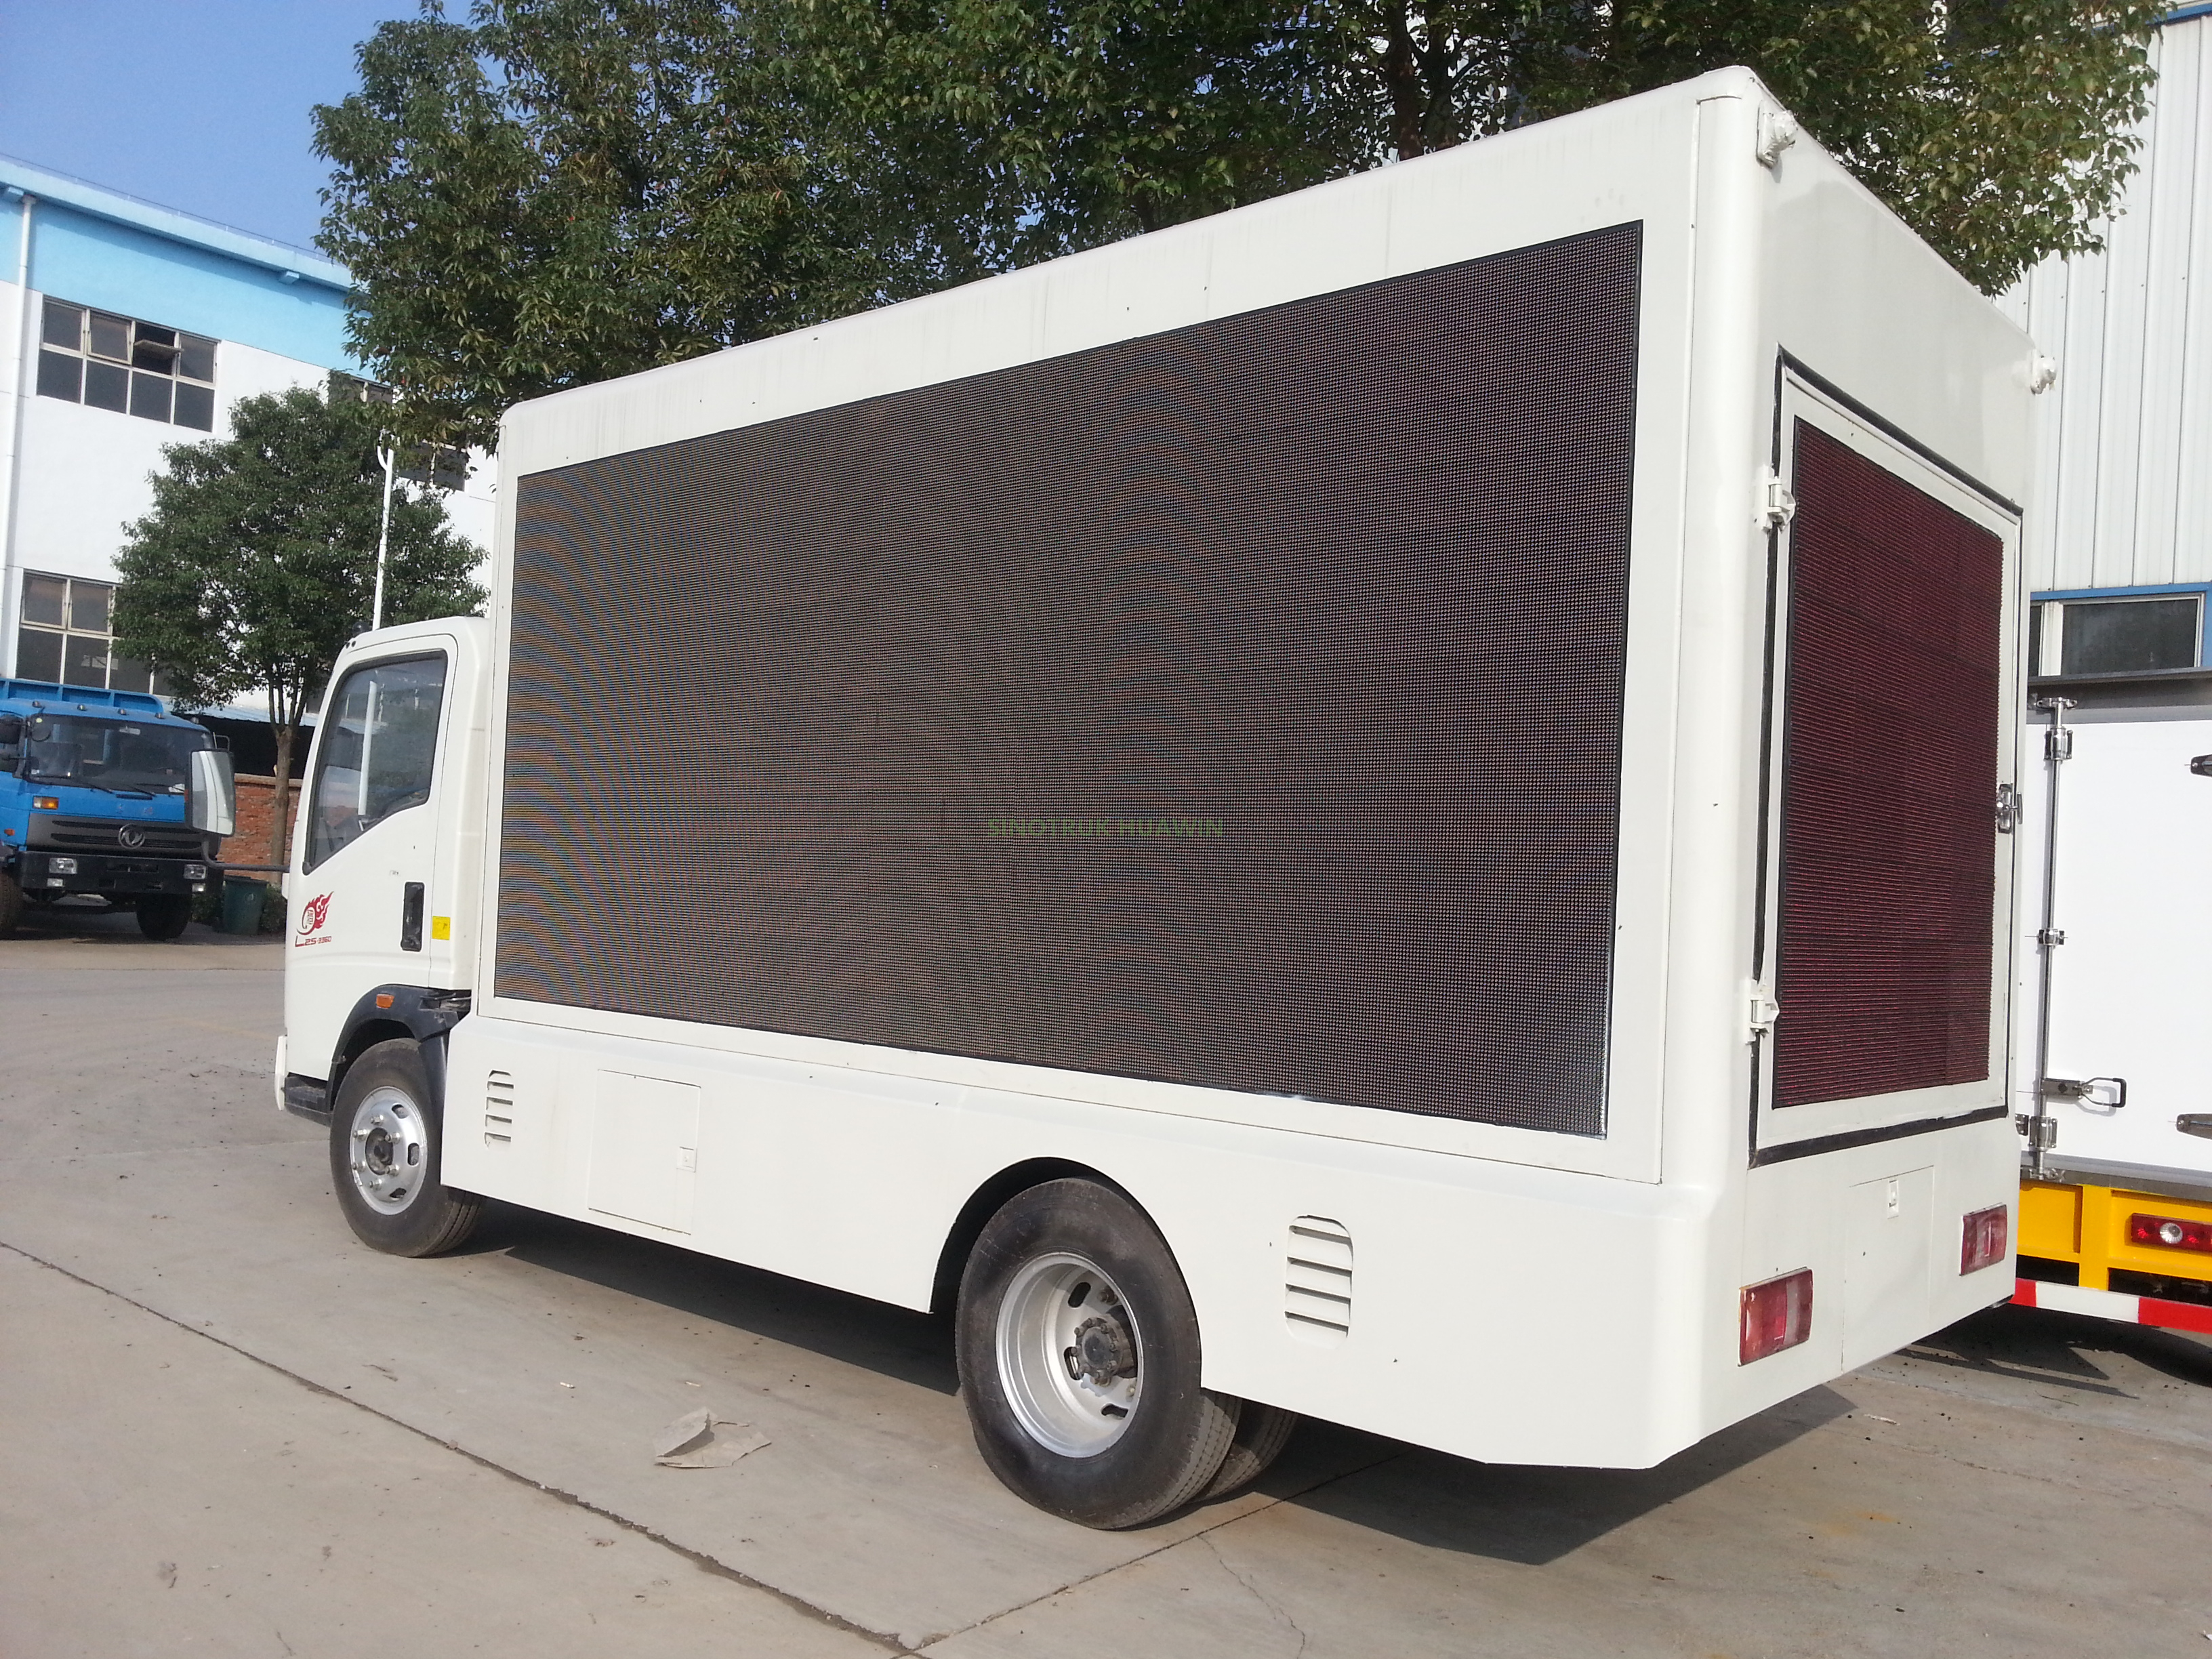 Camión con pantalla LED publicitaria SINOTRUK 4x2